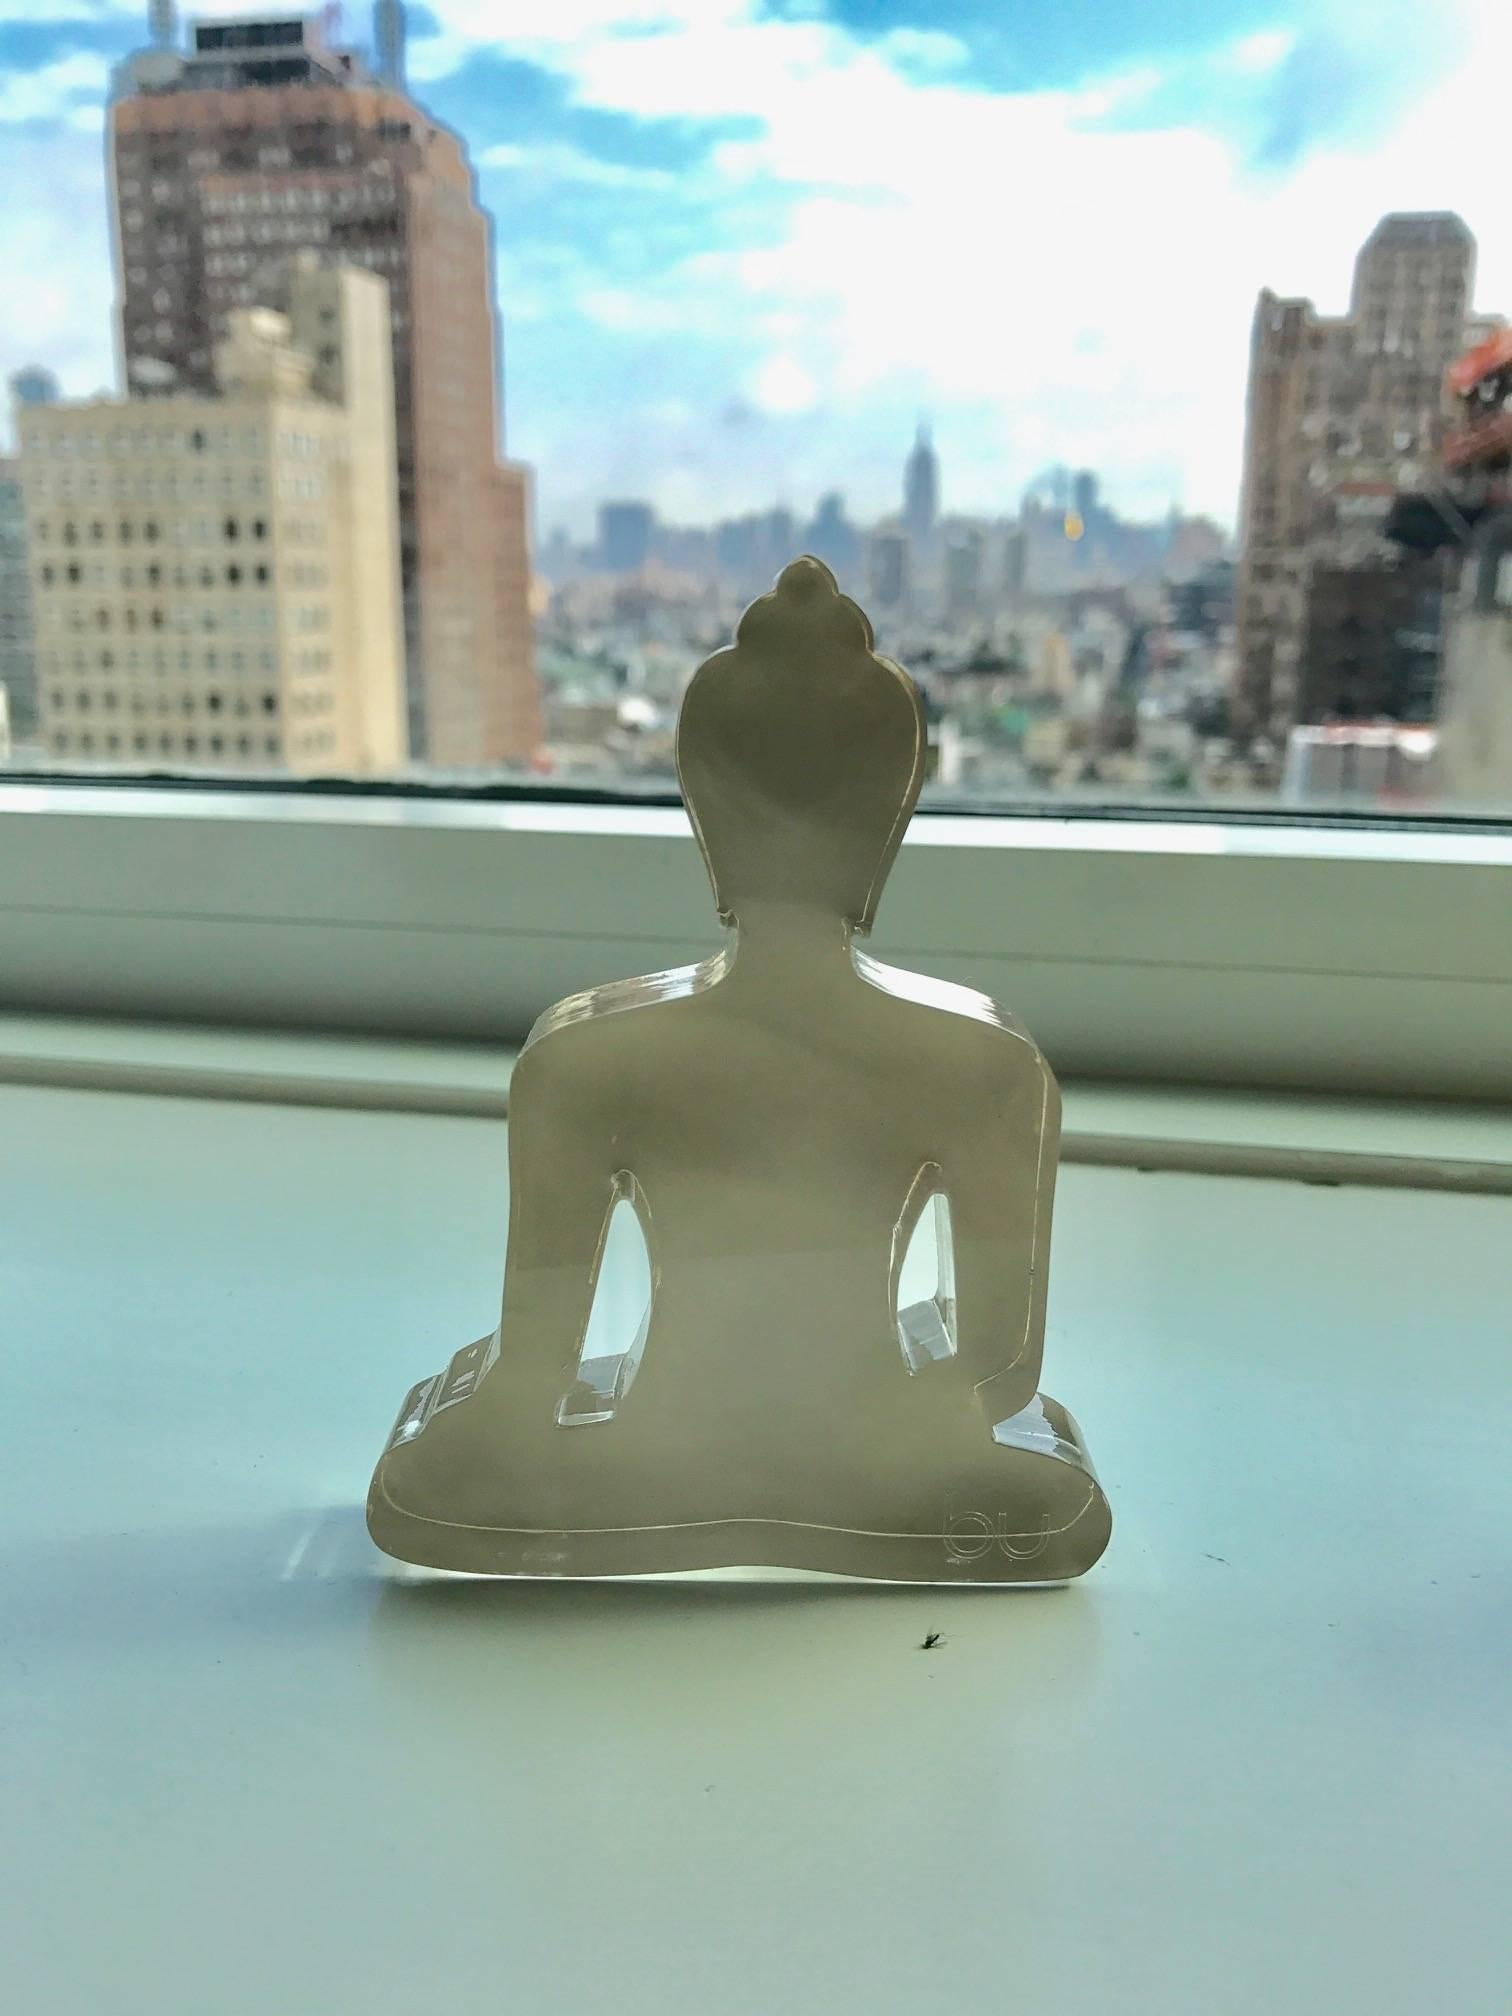 Diese farbenfrohen meditierenden Buddha-Silhouetten-Statuen sind aus lasergeschnittenem Plexiglas und Acryl handbemalt.
Sie können allein stehen, aber auch zu zweit, zu dritt oder zu mehreren kommen... 
Diese einzigartige Statue sorgt für